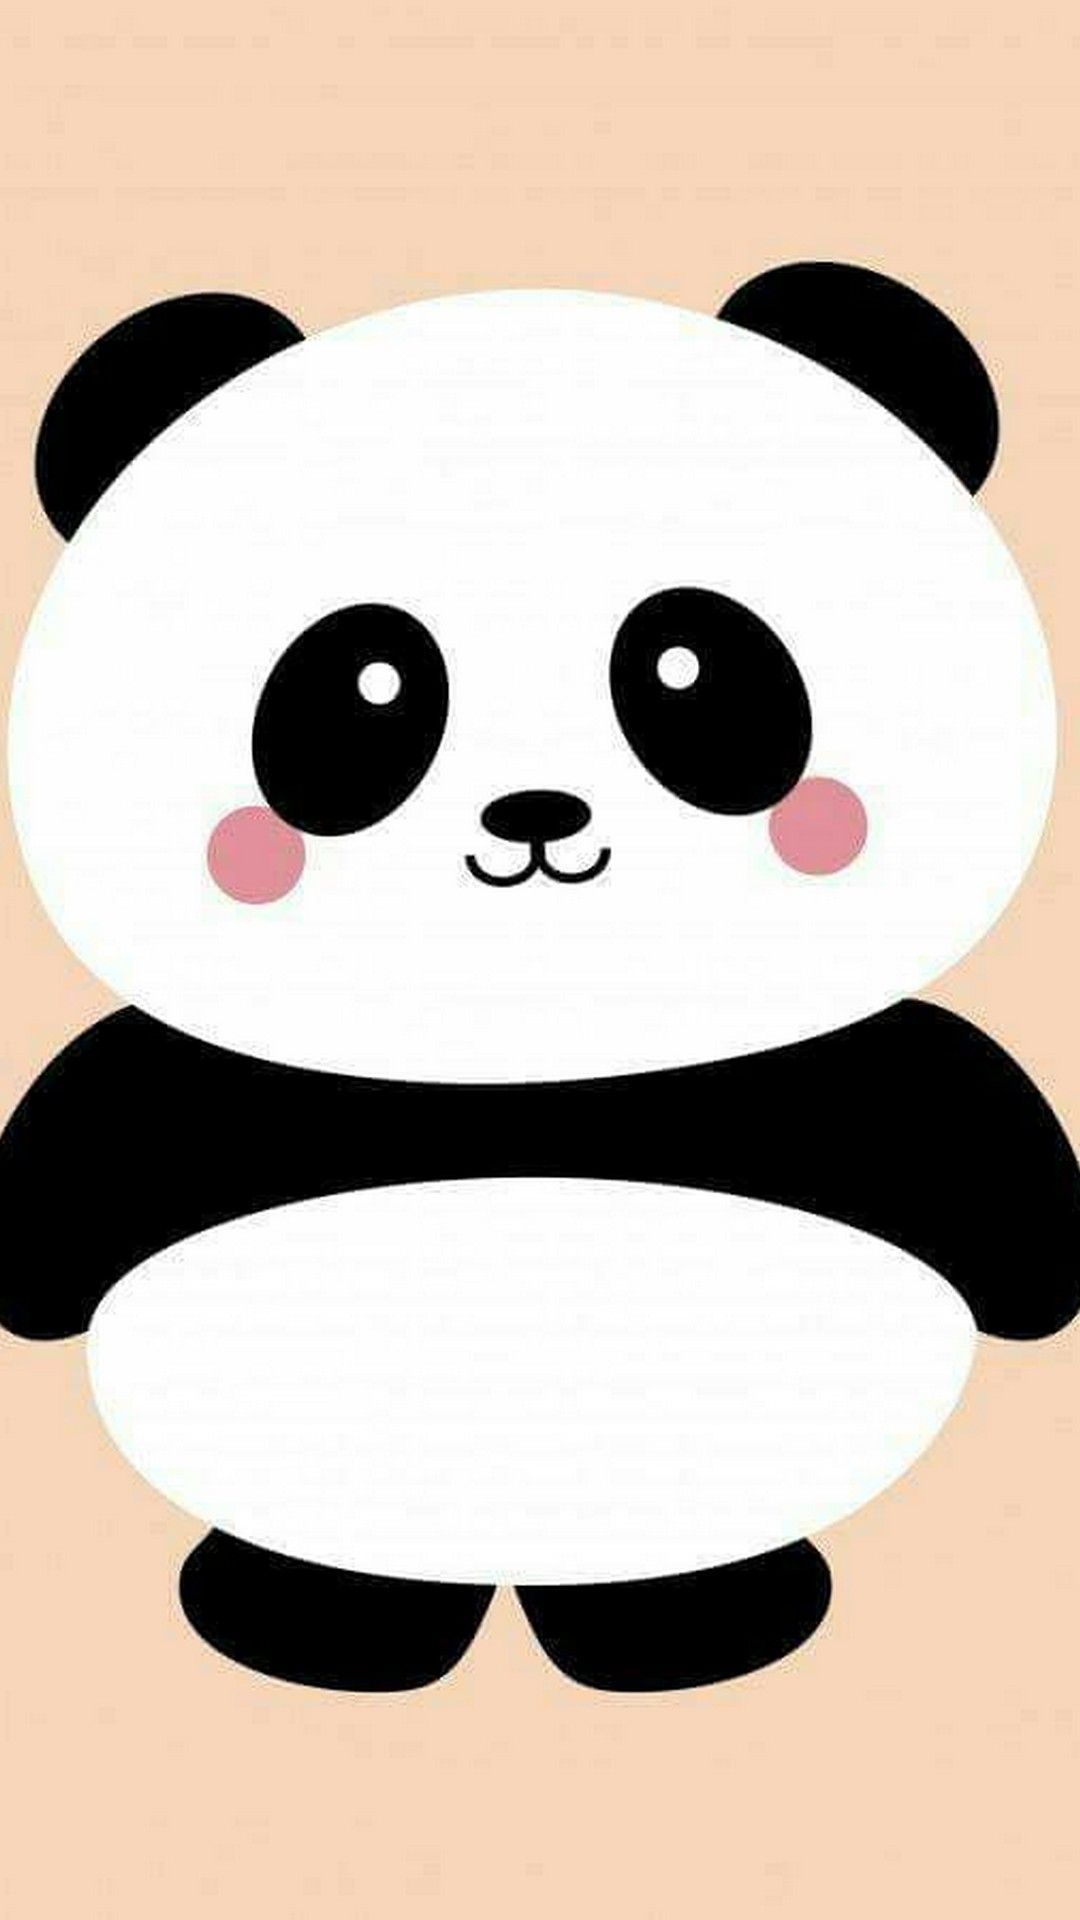 A cute panda bear with big eyes and black fur - Panda